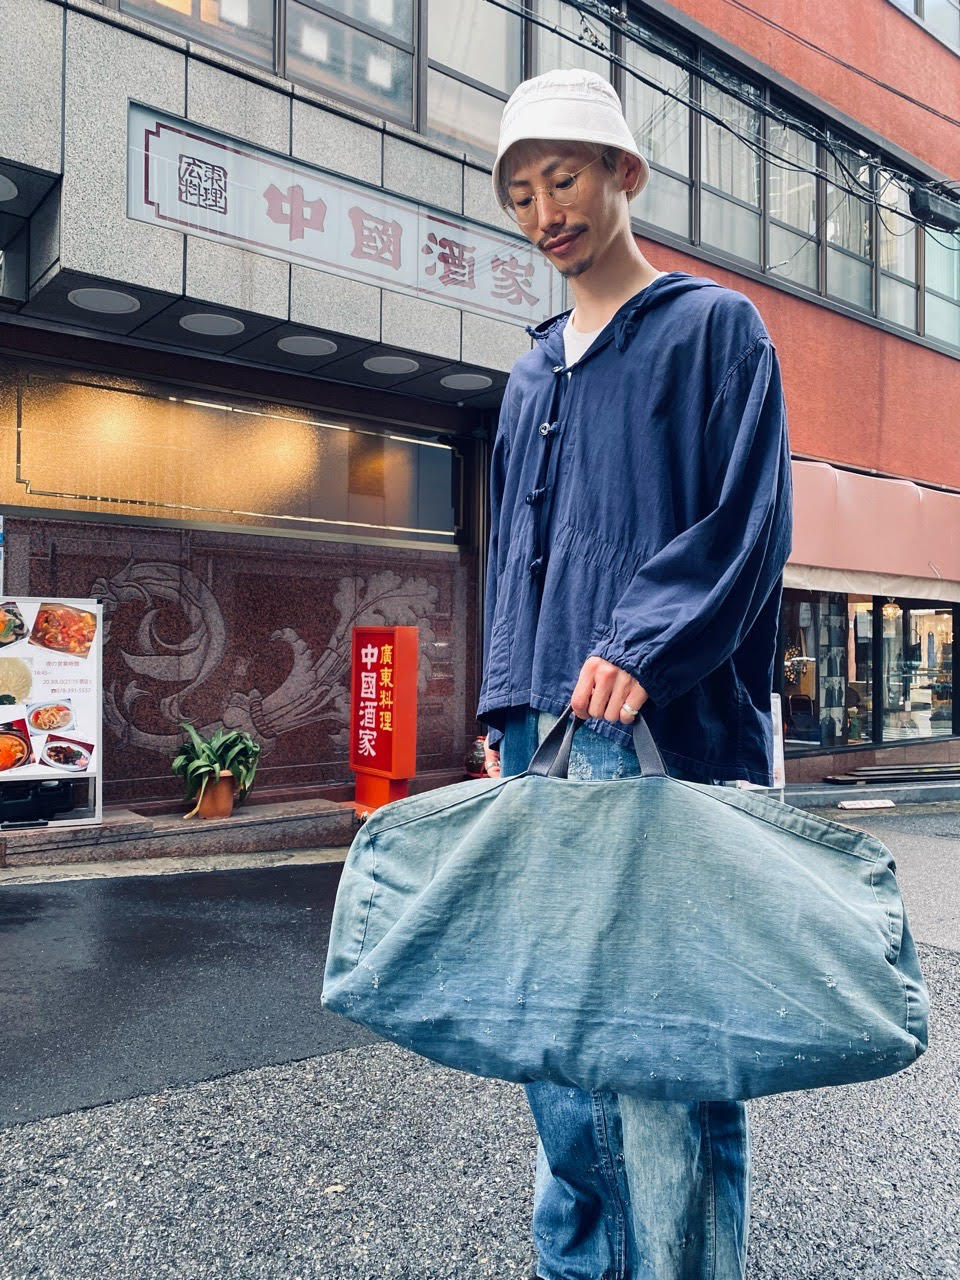 マグネッツ神戸店 5/17(水)Vintage入荷! #7 Vintage Bag Item!!!_c0078587_16273075.jpg